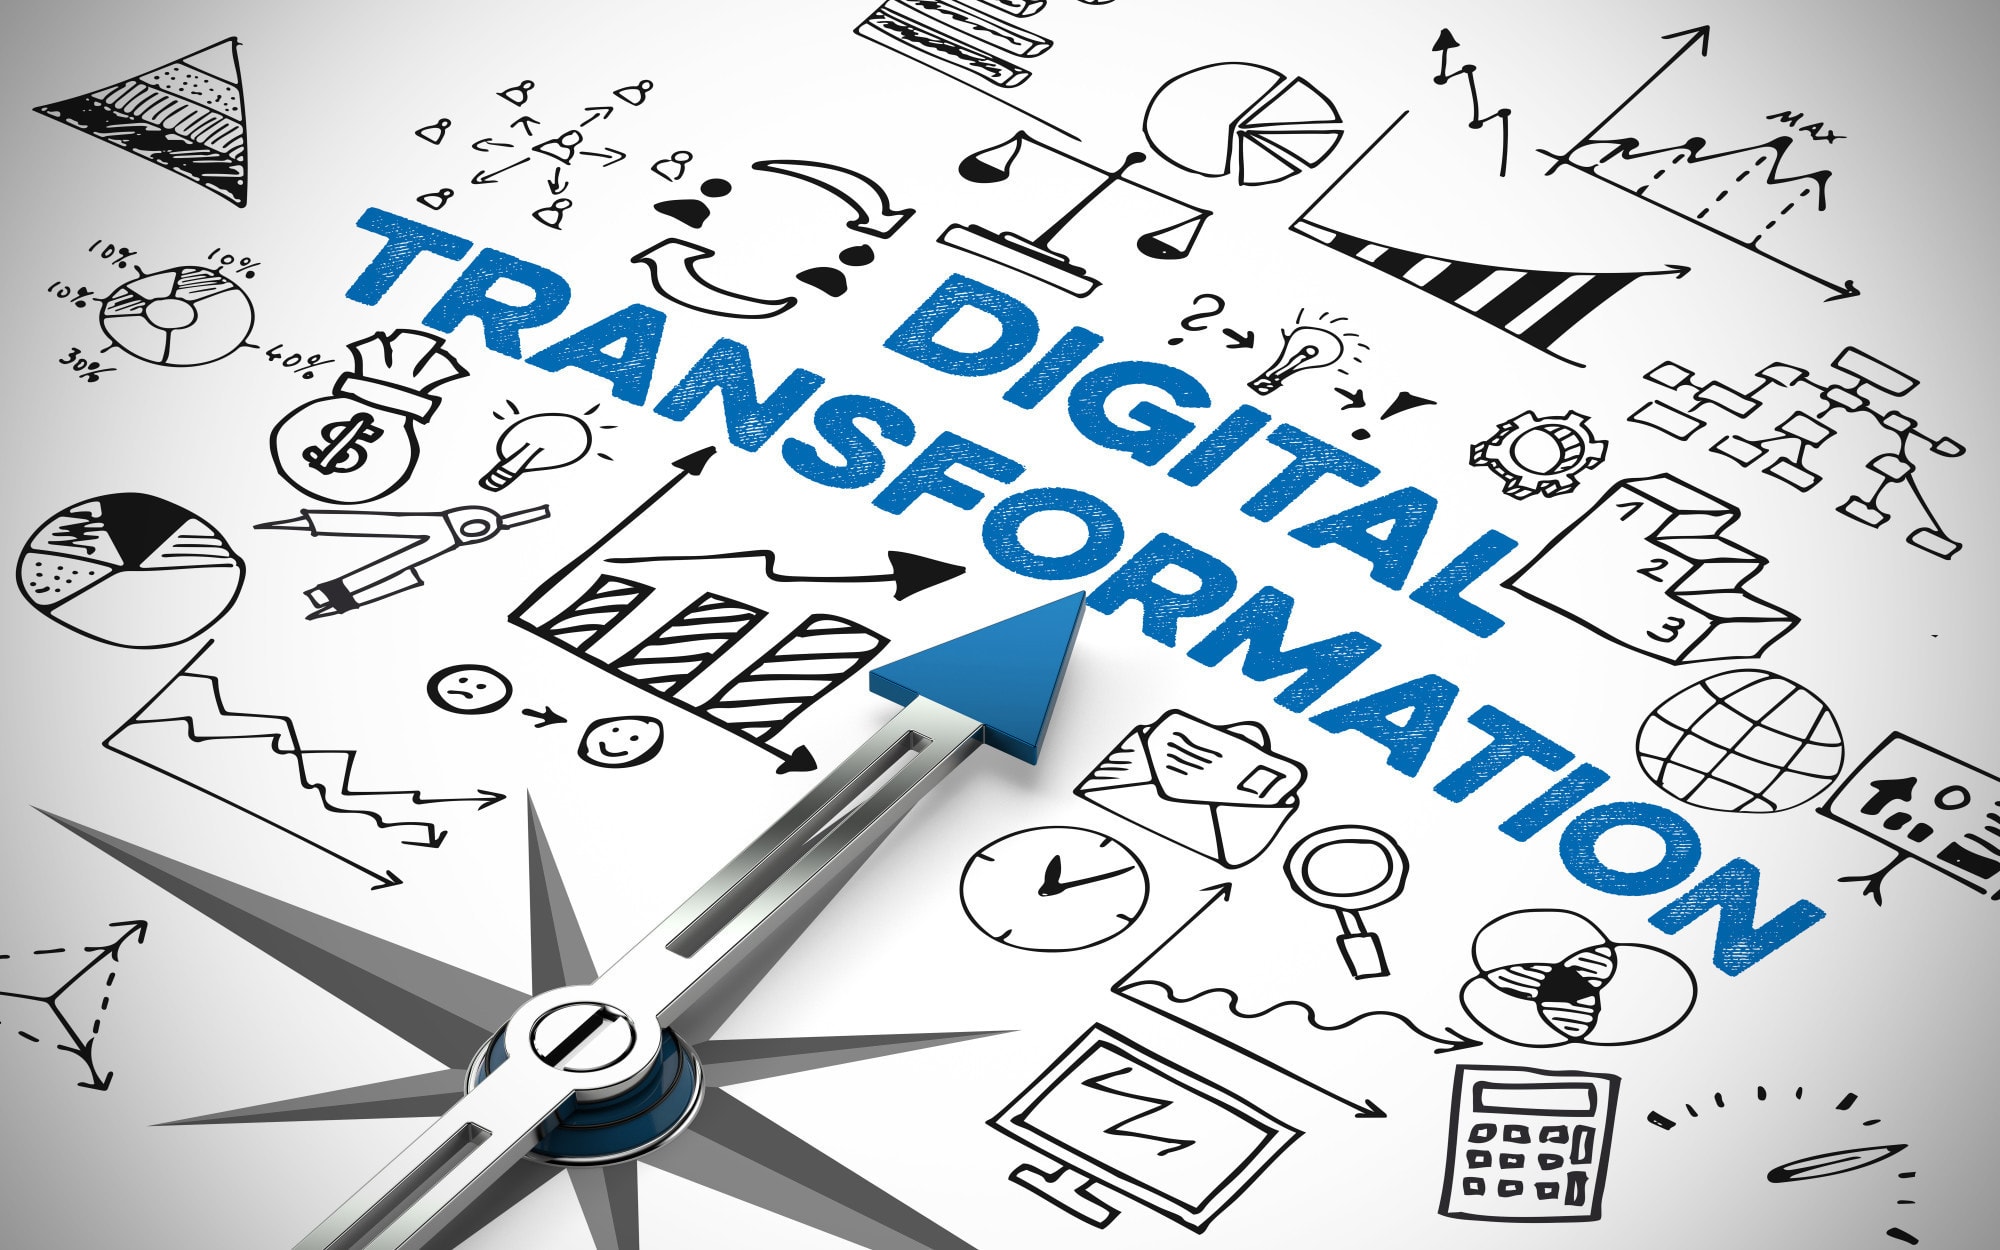 digital transformation strategy